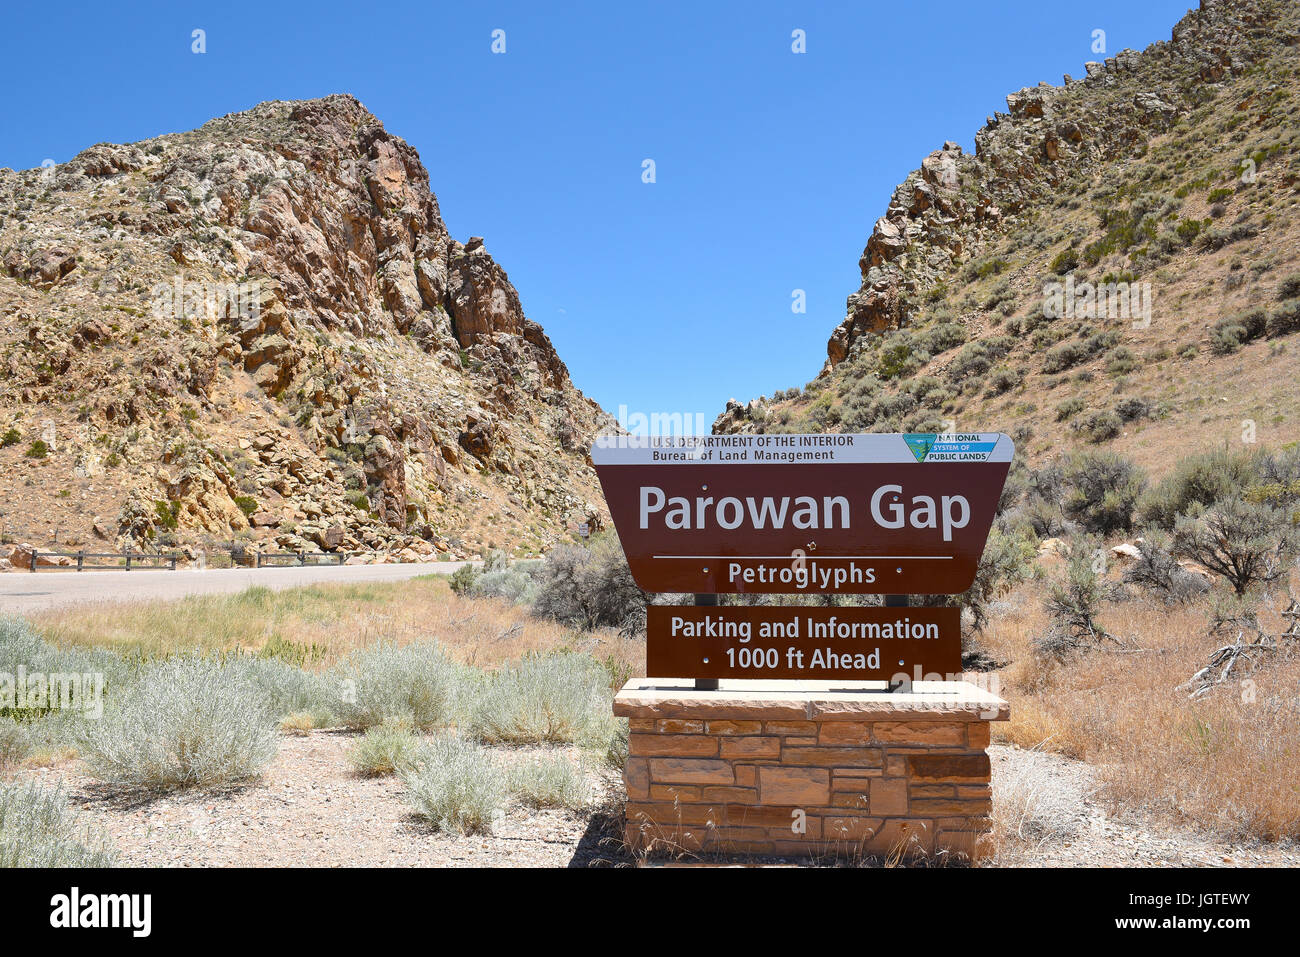 PAROWAN, Utah - 29. JUNI 2017: Parowan Lücke unterzeichnen. Am Rande des trockenen wenig Salz See, liegt eine natürliche Lücke in den Bergen, mit Hunderten abgedeckt o Stockfoto